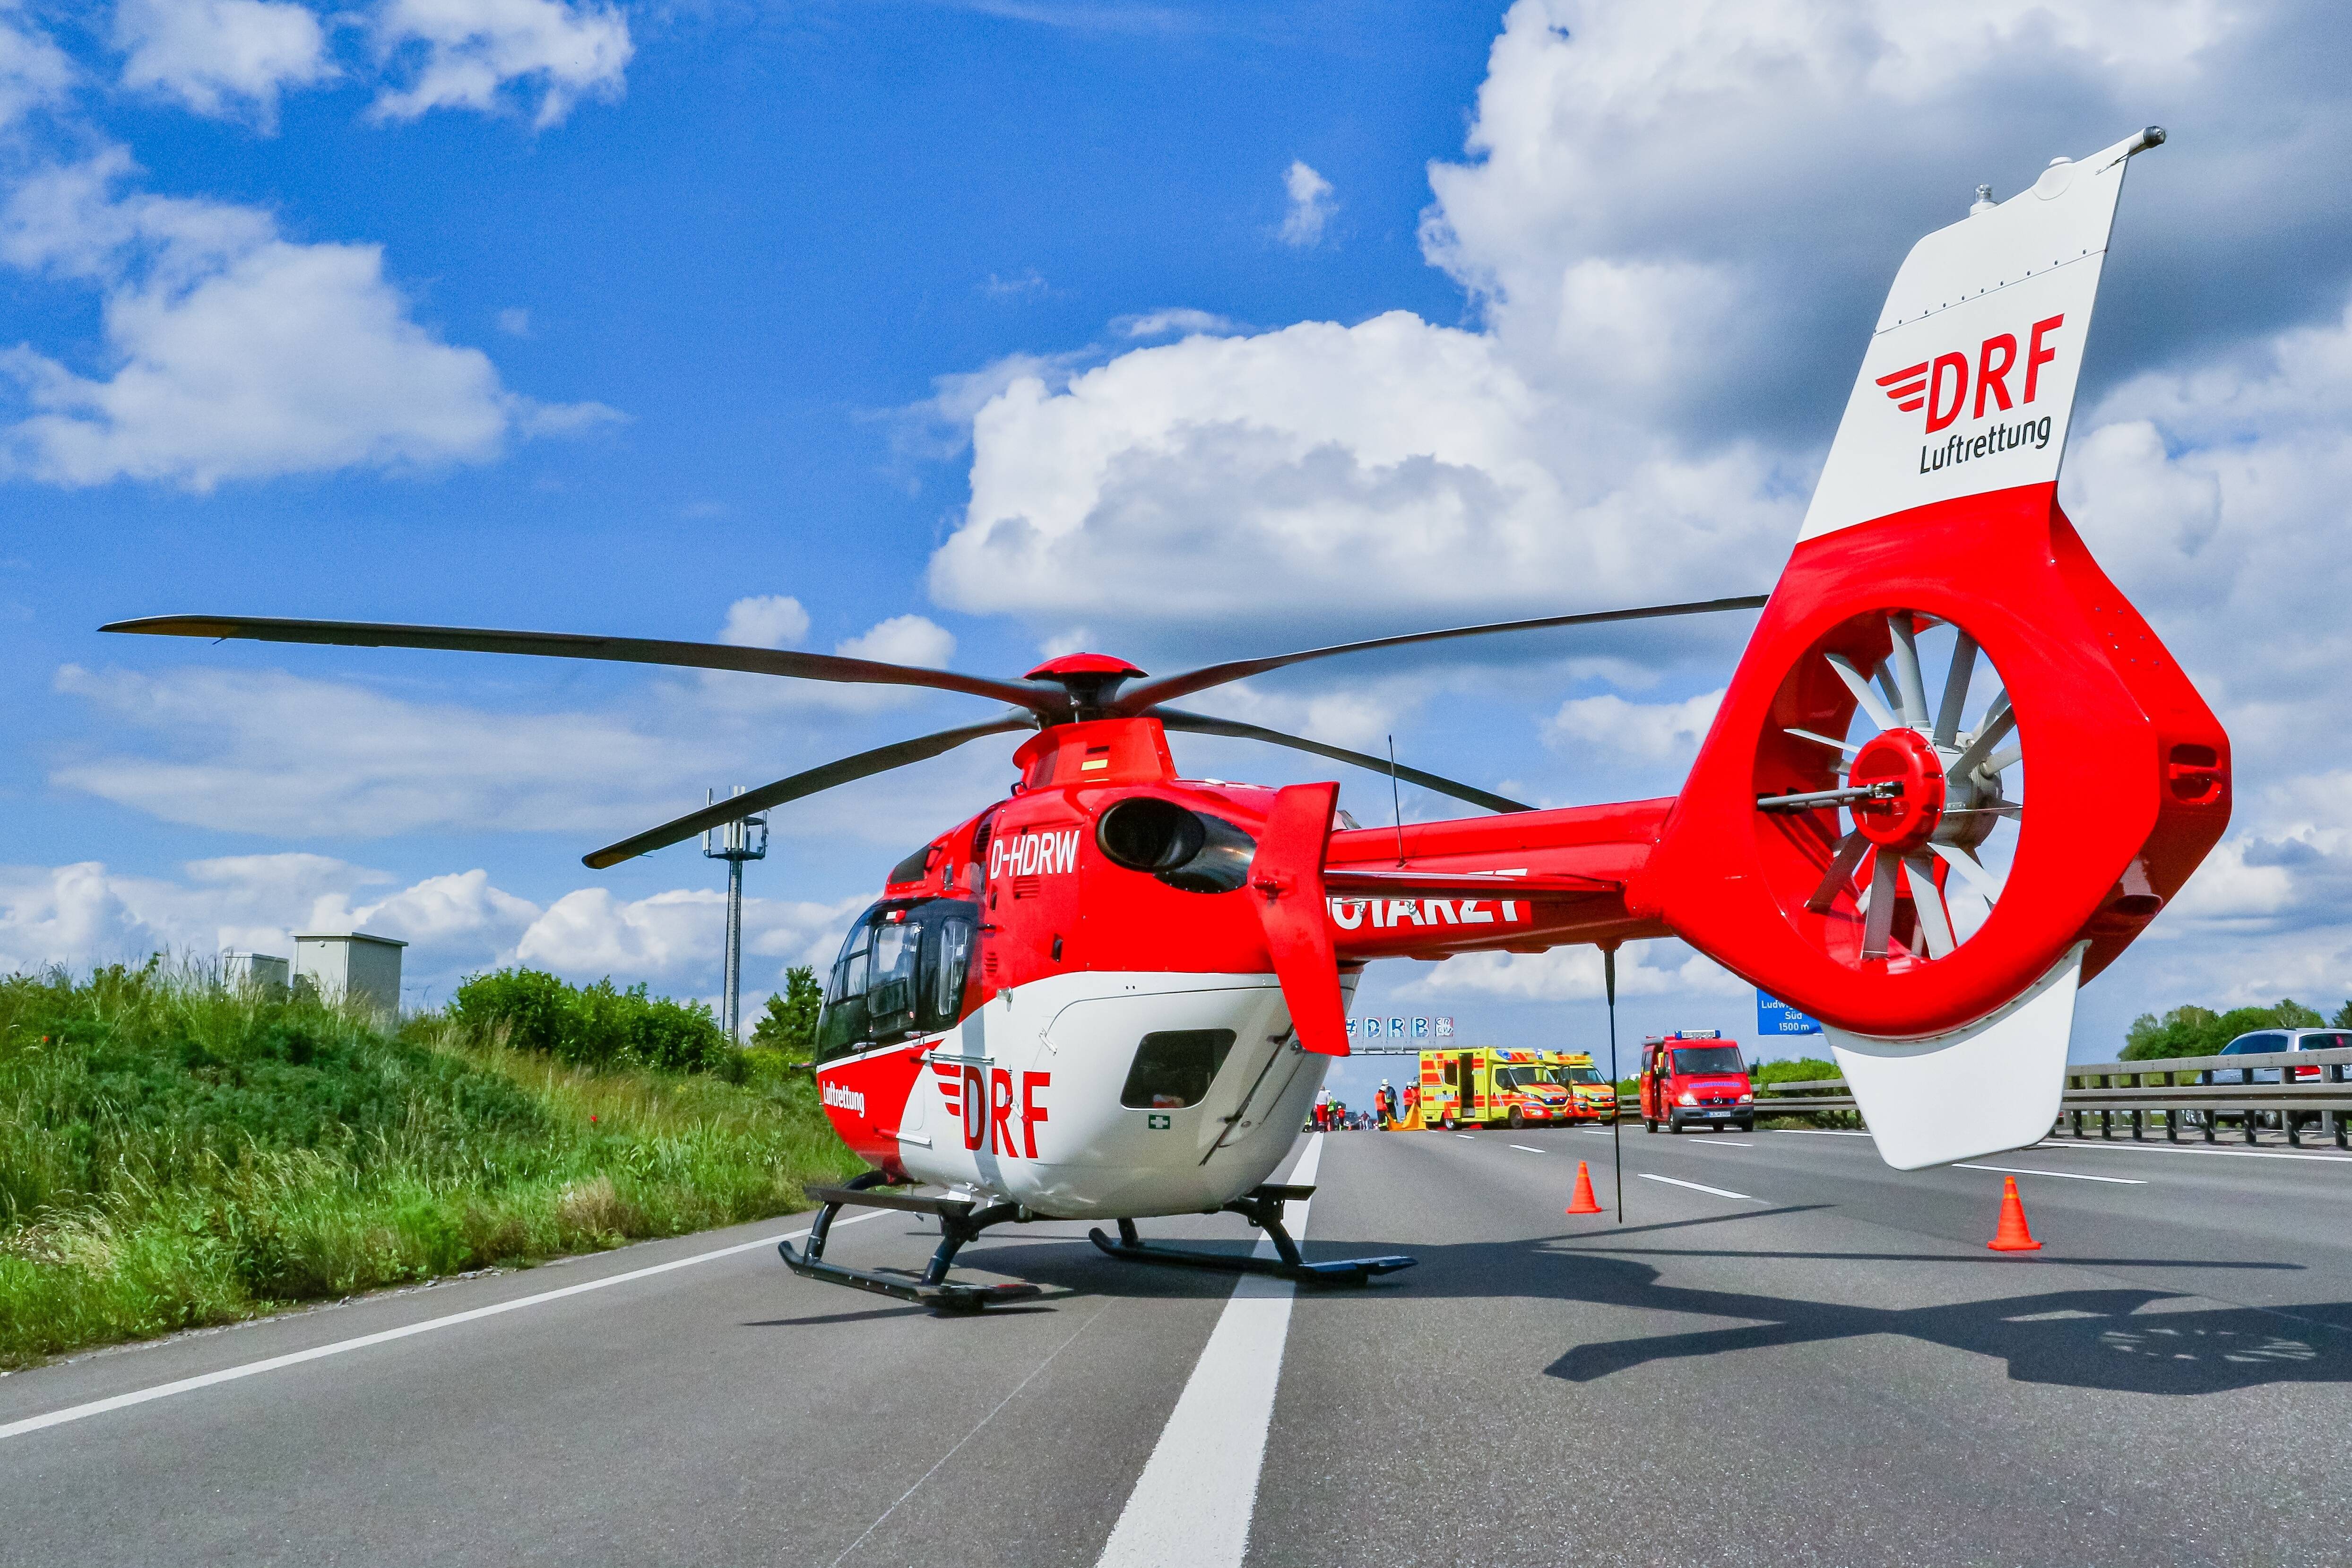 Schwerer Unfall  - Kind von Auto erfasst - Neunjähriger Junge schwer verletzt! Hubschrauber im Einsatz